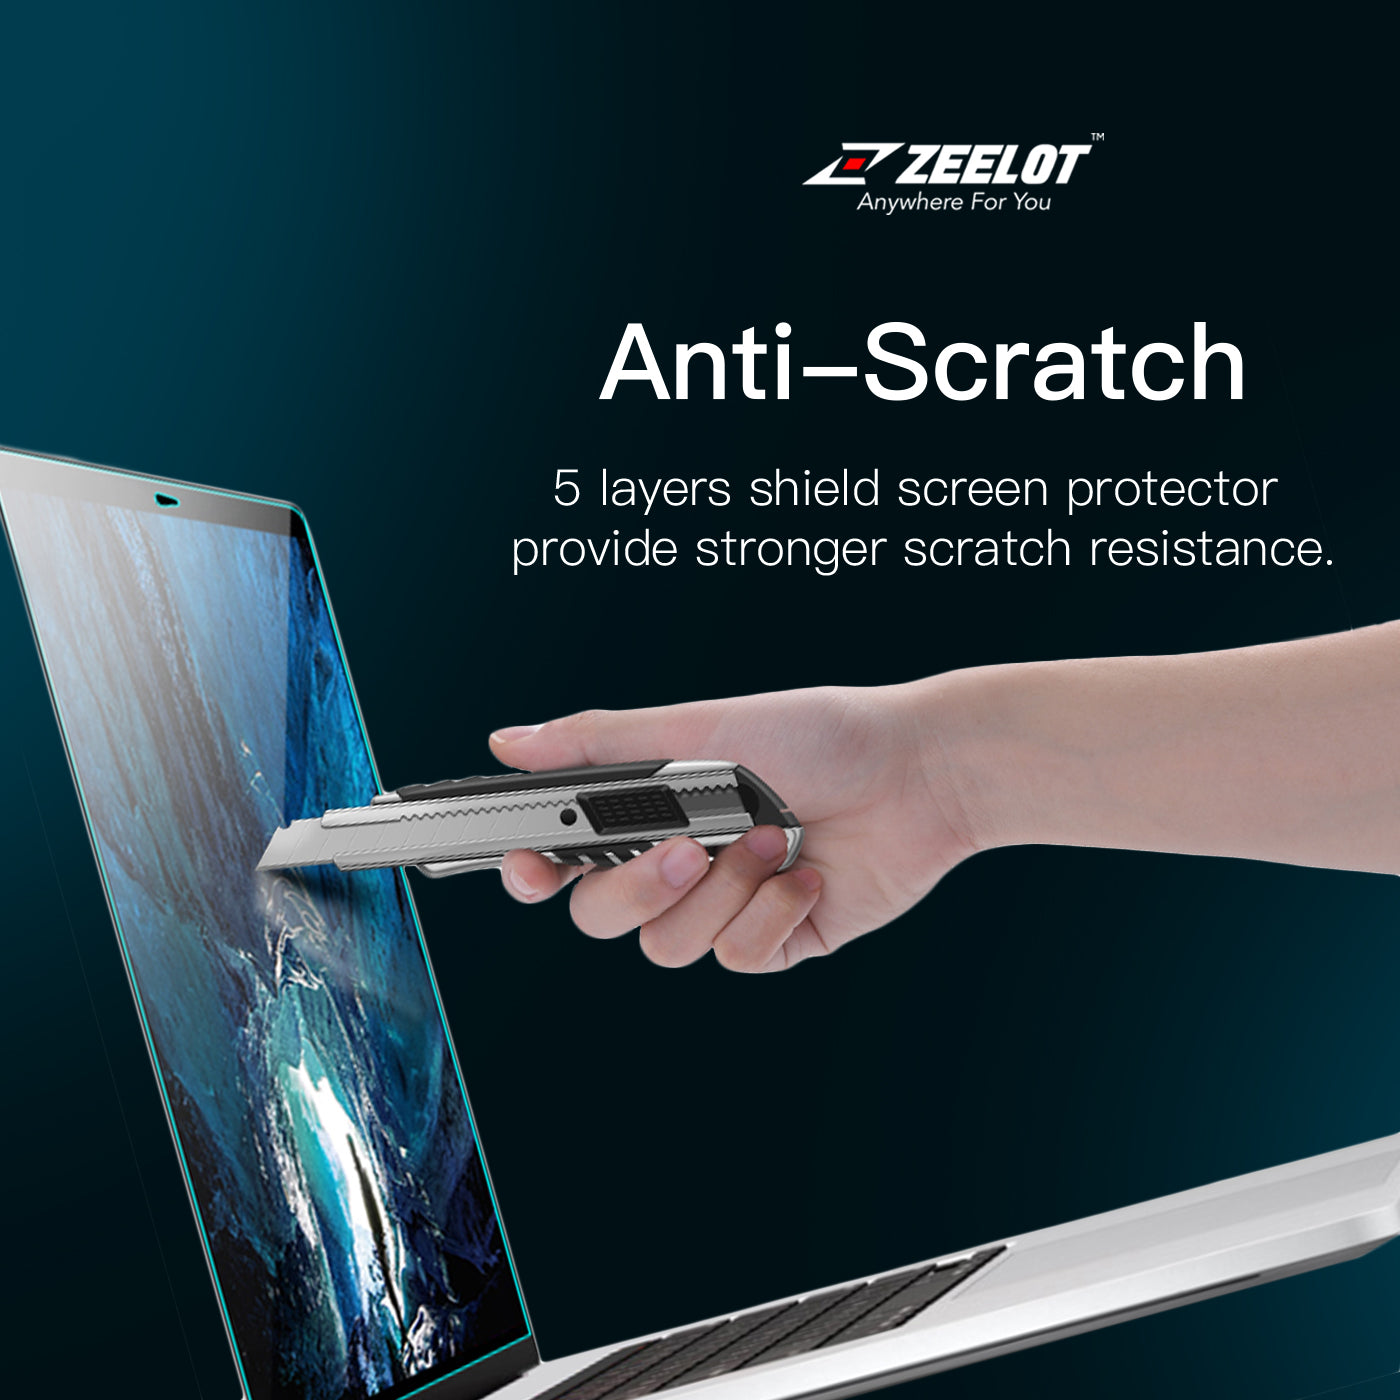 ZEELOT PureShield Crystal Film Screen Protector for Macbook Pro 16"(2021) Default ZEELOT 